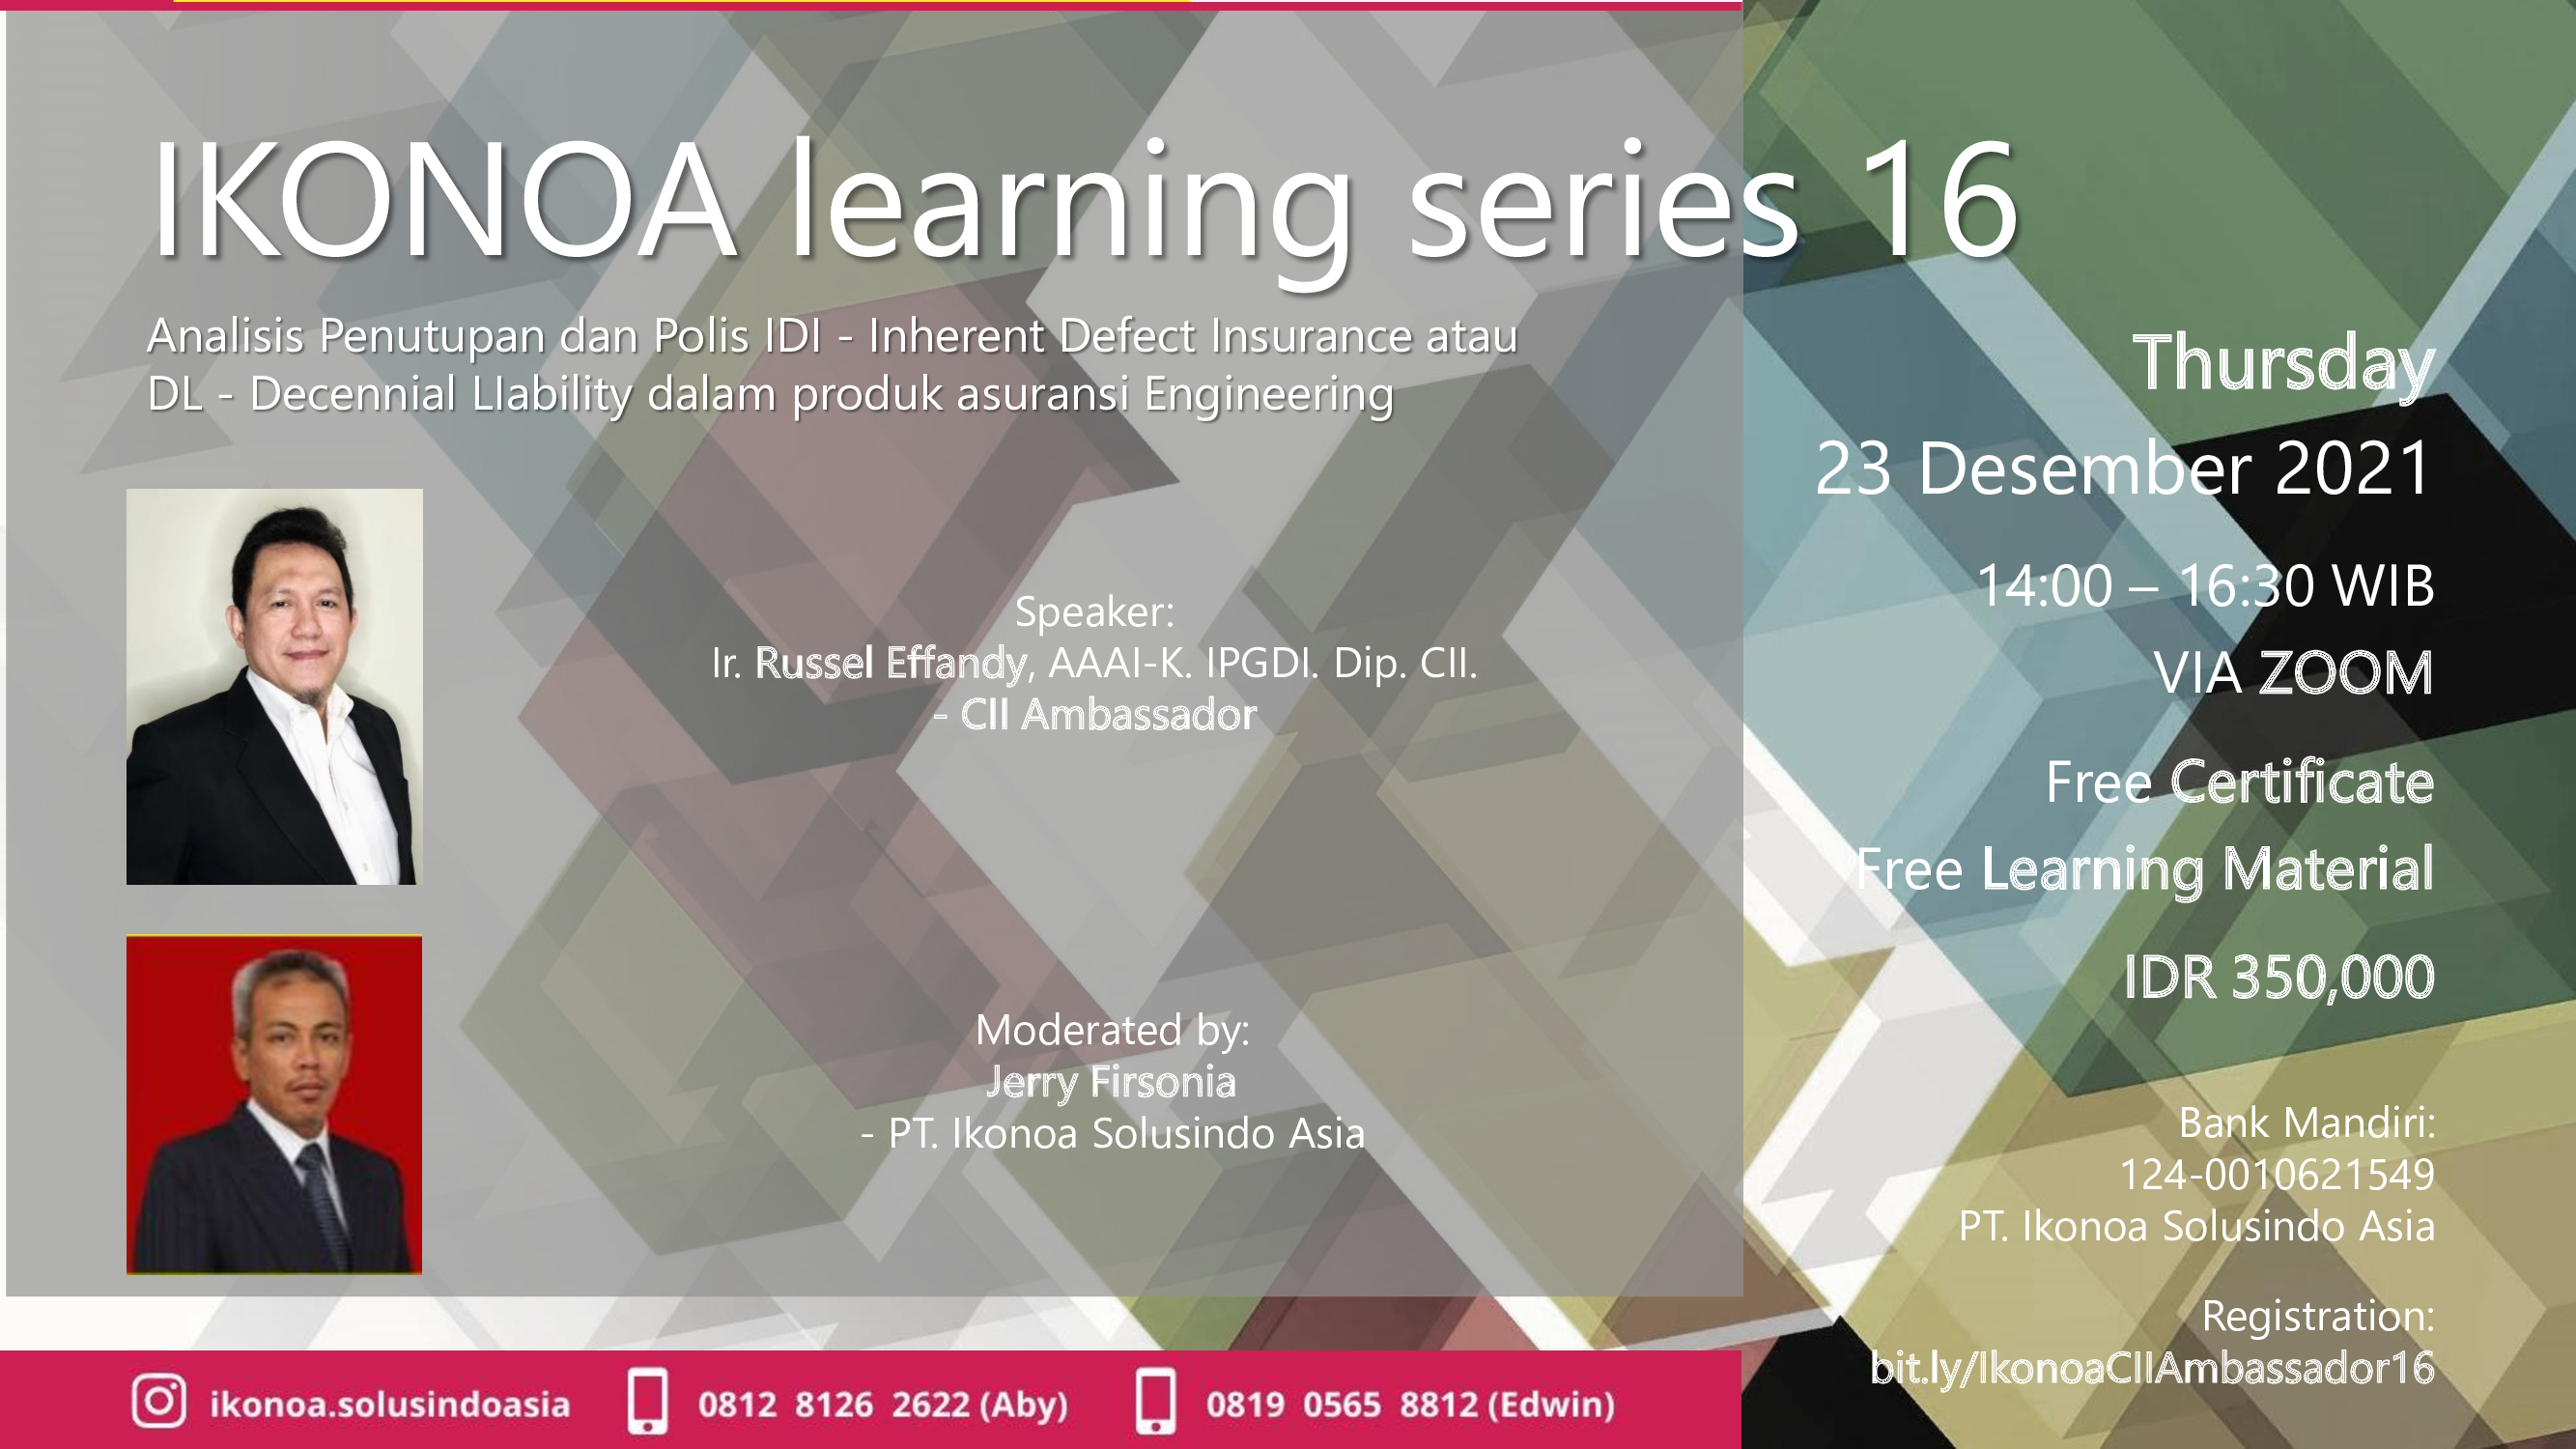 ikonoa-learning-series-16-flyer